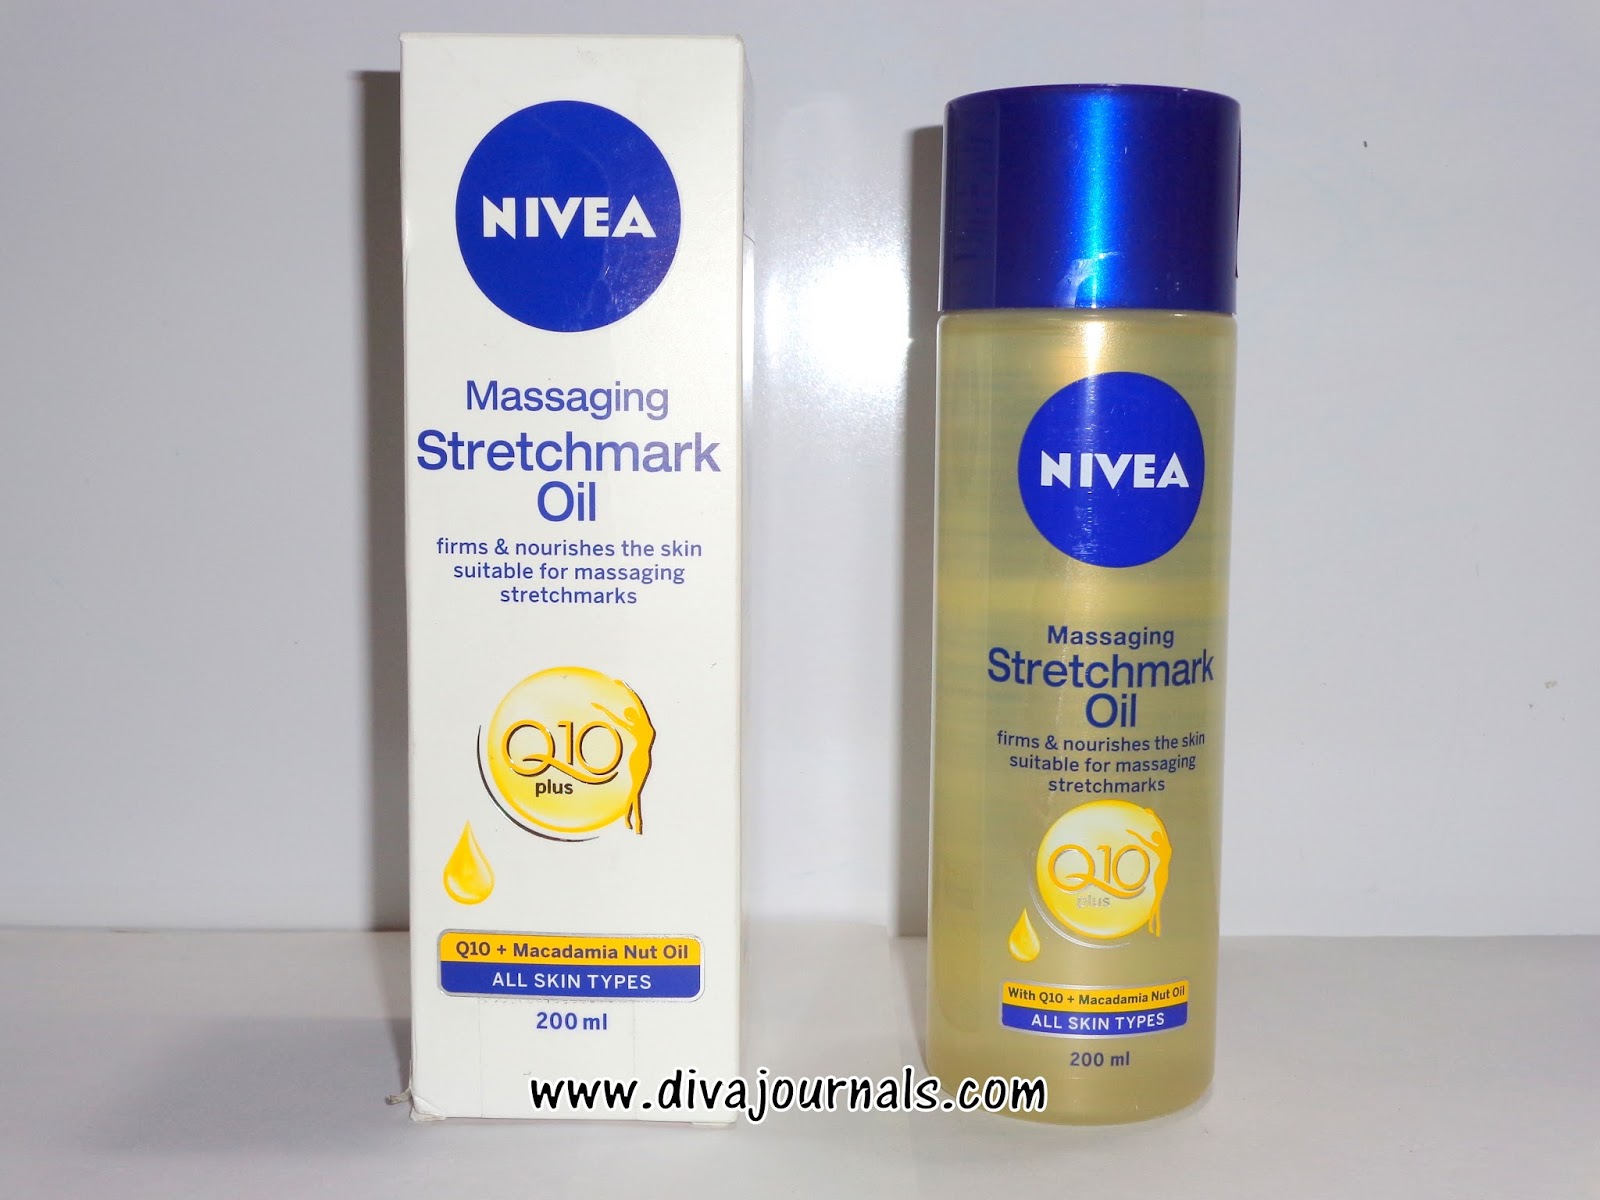 Nivea Q10 Plus Massaging Oil Review